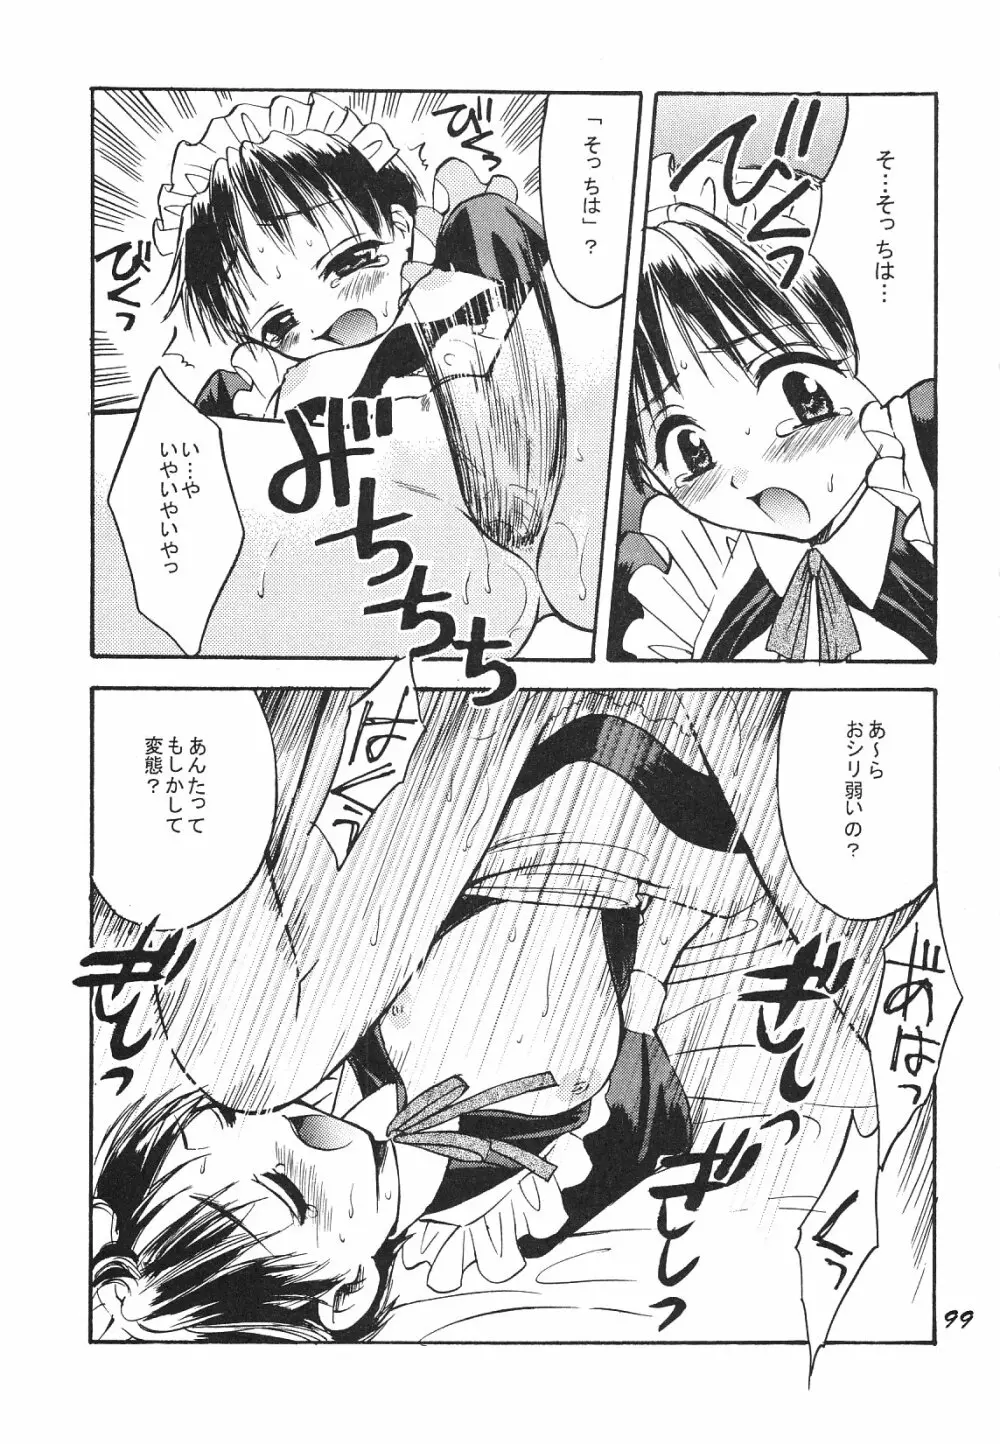 Maniac Juice 女シンジ再録集 ’96-’99 99ページ